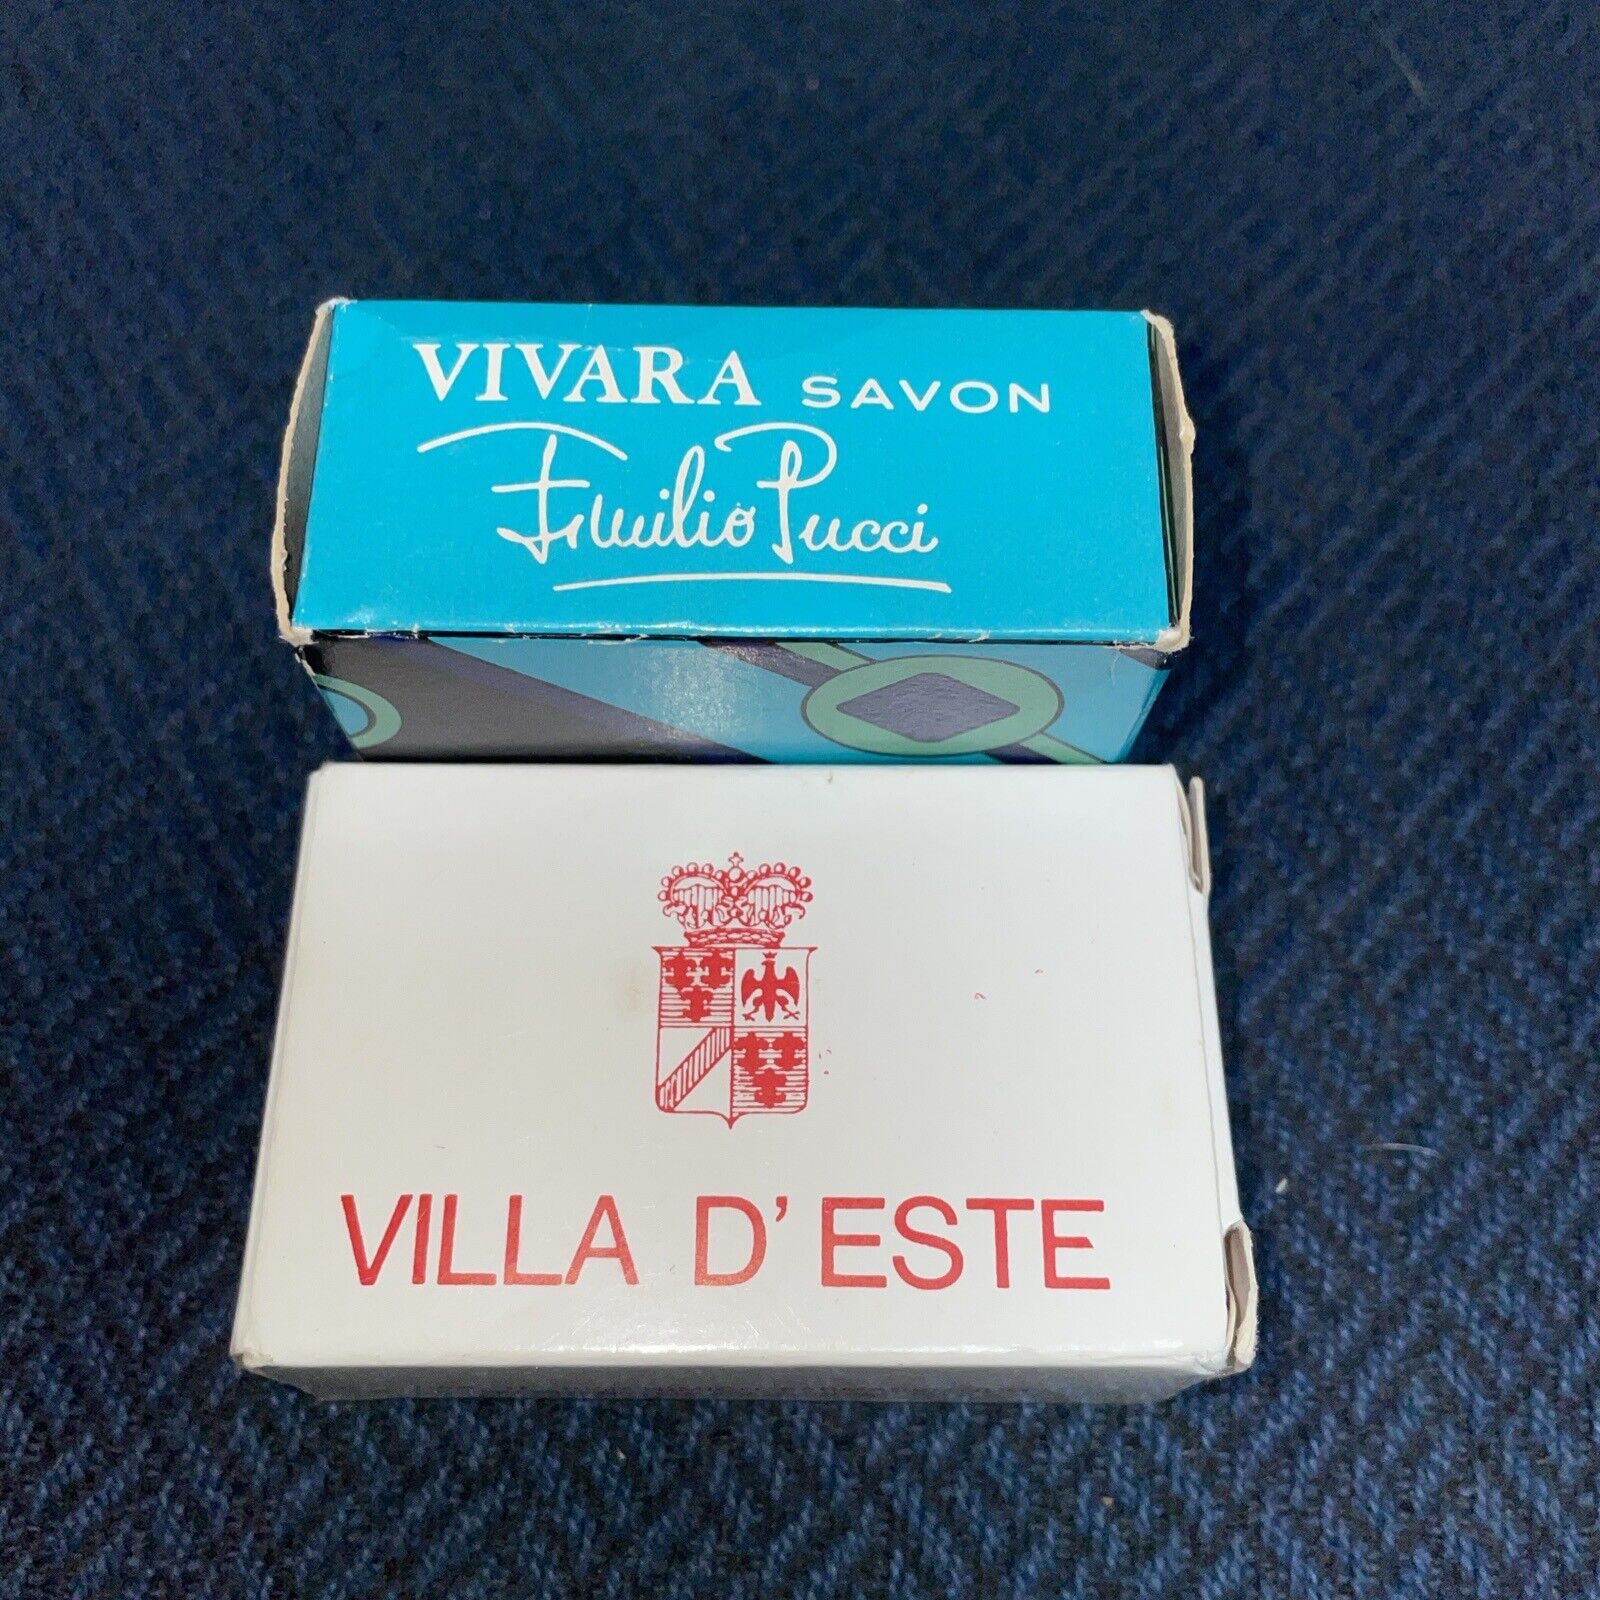 Vivara Savon Emilio Pucci Sample Soap And Villa D’Este New In Box